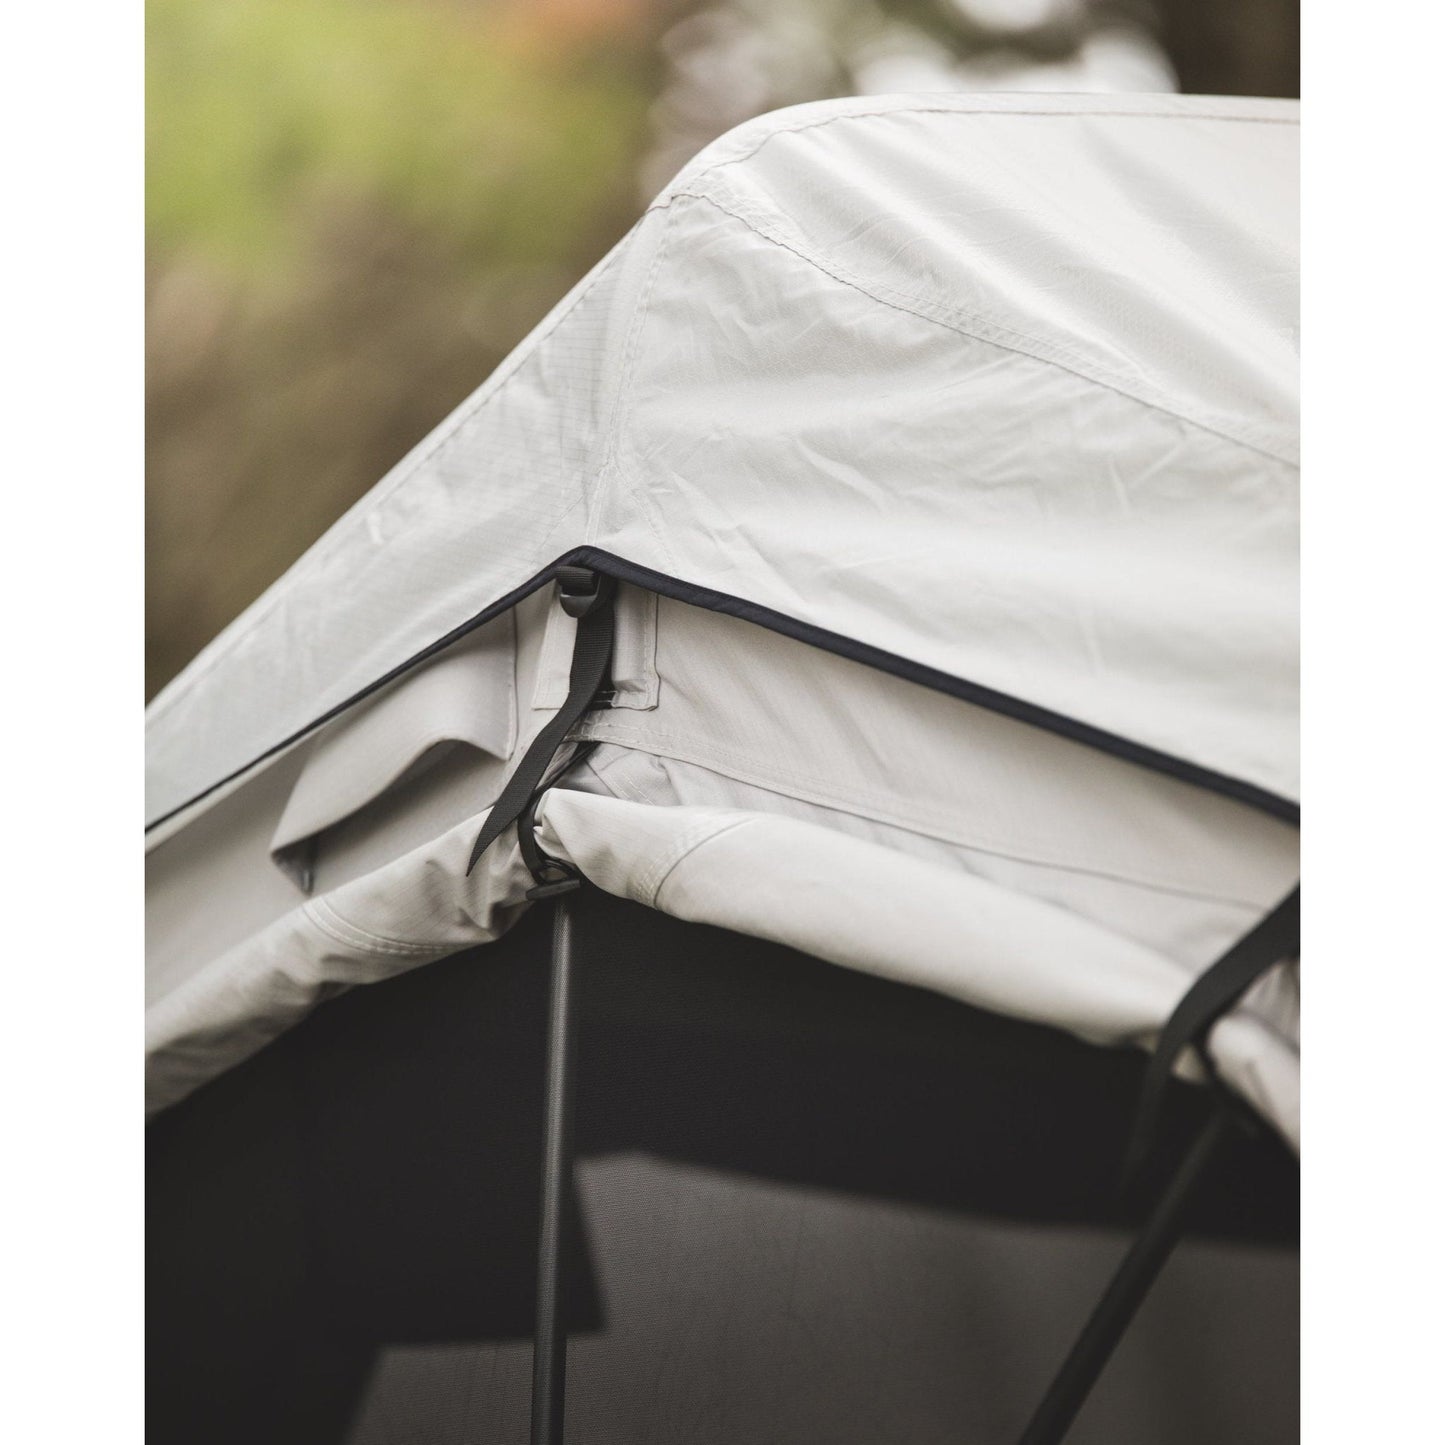 Feldon Shelter Crow's Nest Extended Rooftop Tent - Grey - Shop Feldon Shelter | Stoke Equipment Co Nelson